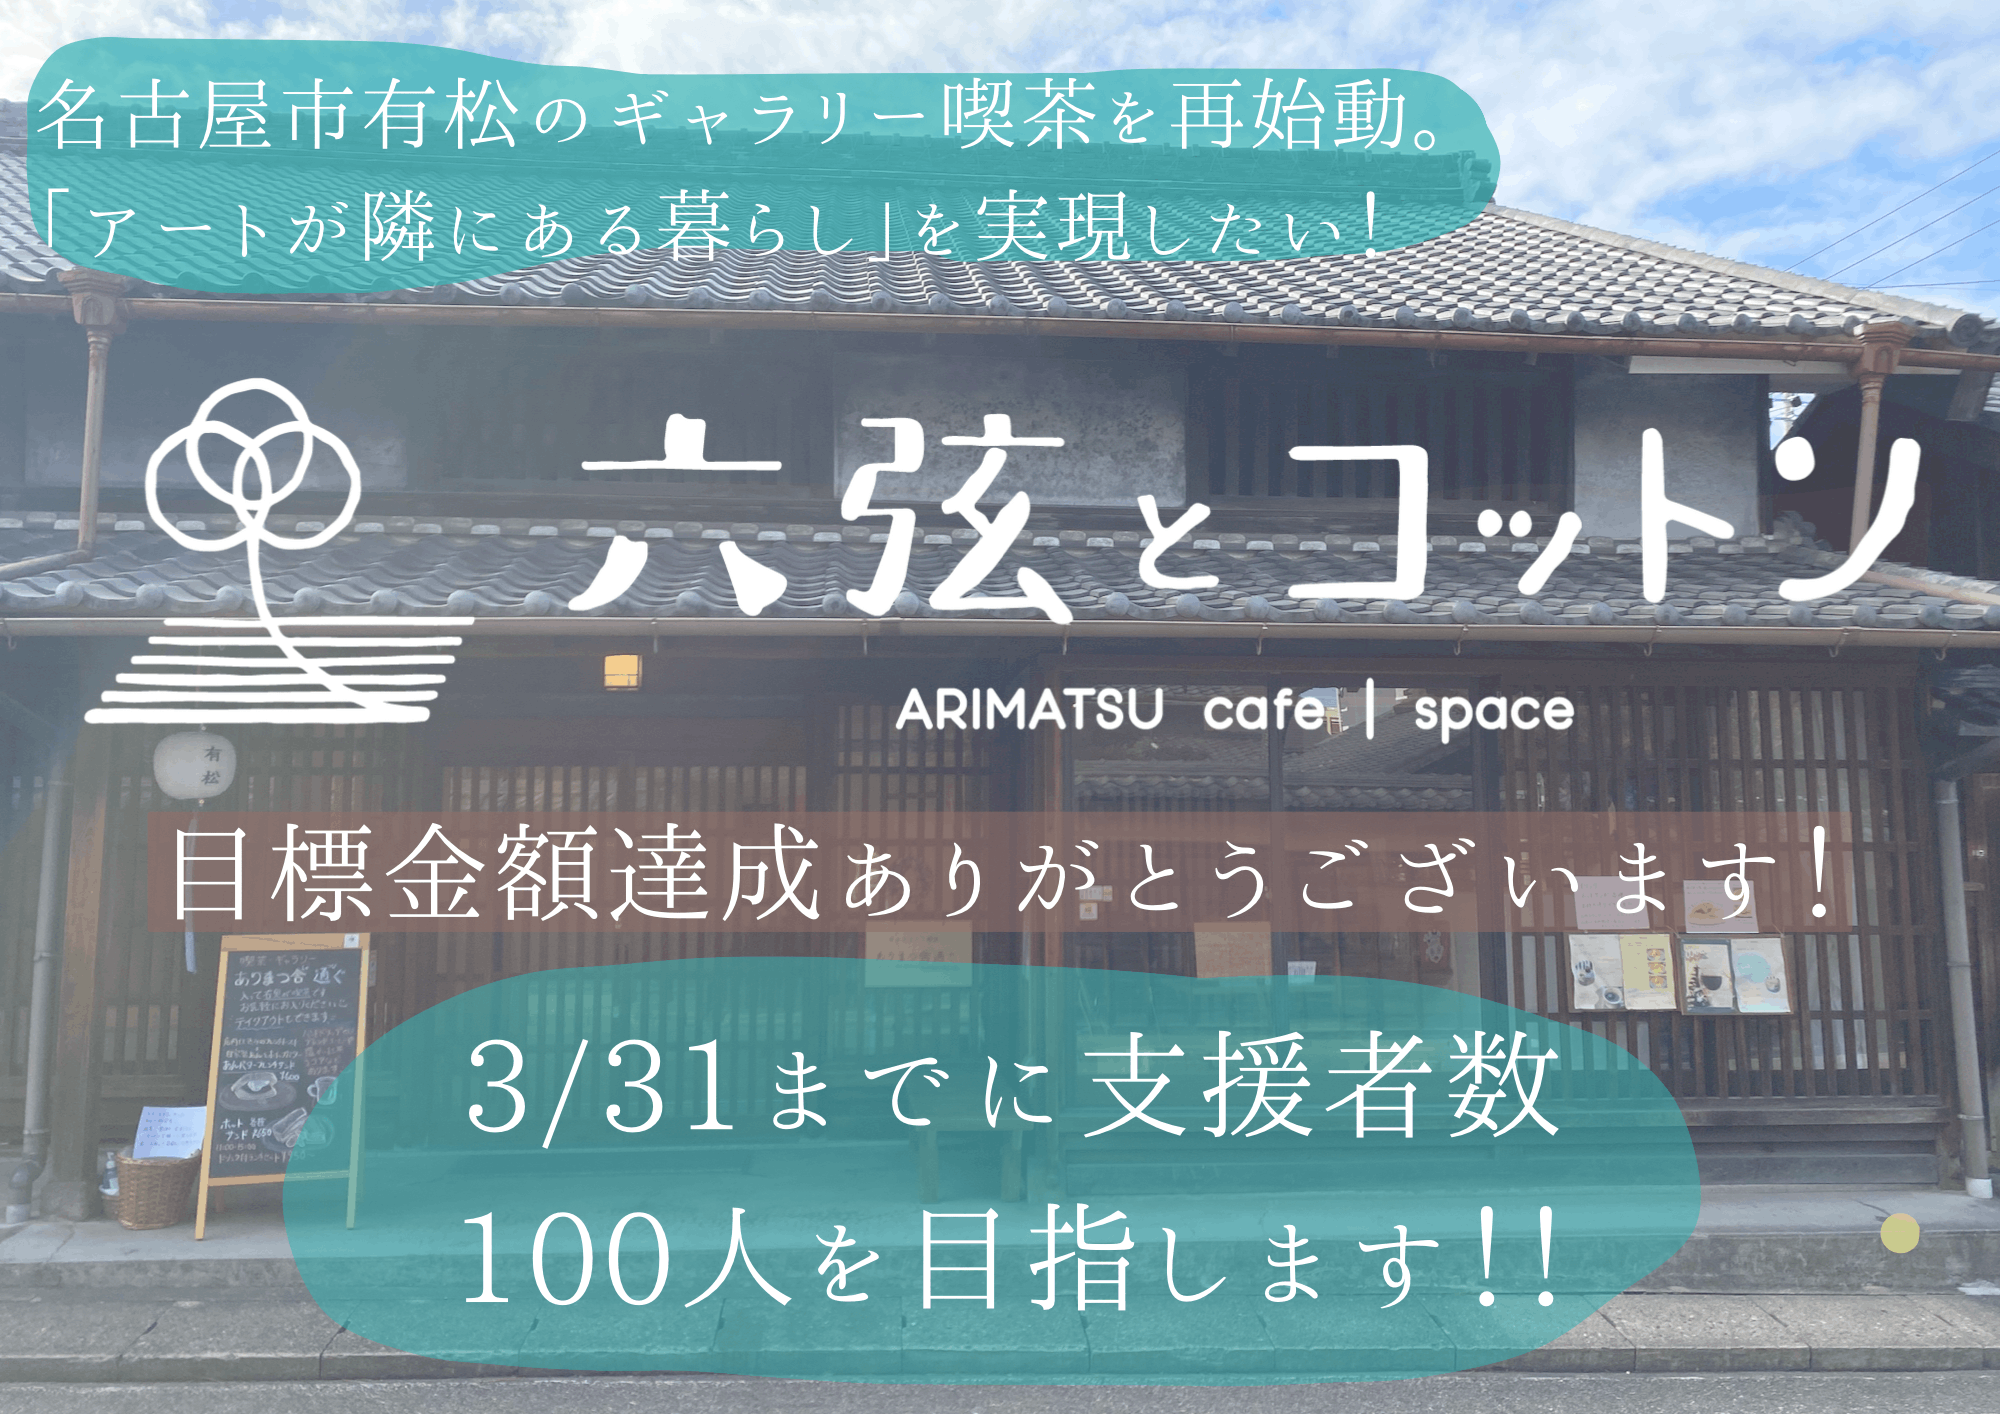 名古屋市有松のギャラリー喫茶が再始動。「アートが隣にある暮らし」を提案します！ - CAMPFIRE (キャンプファイヤー)